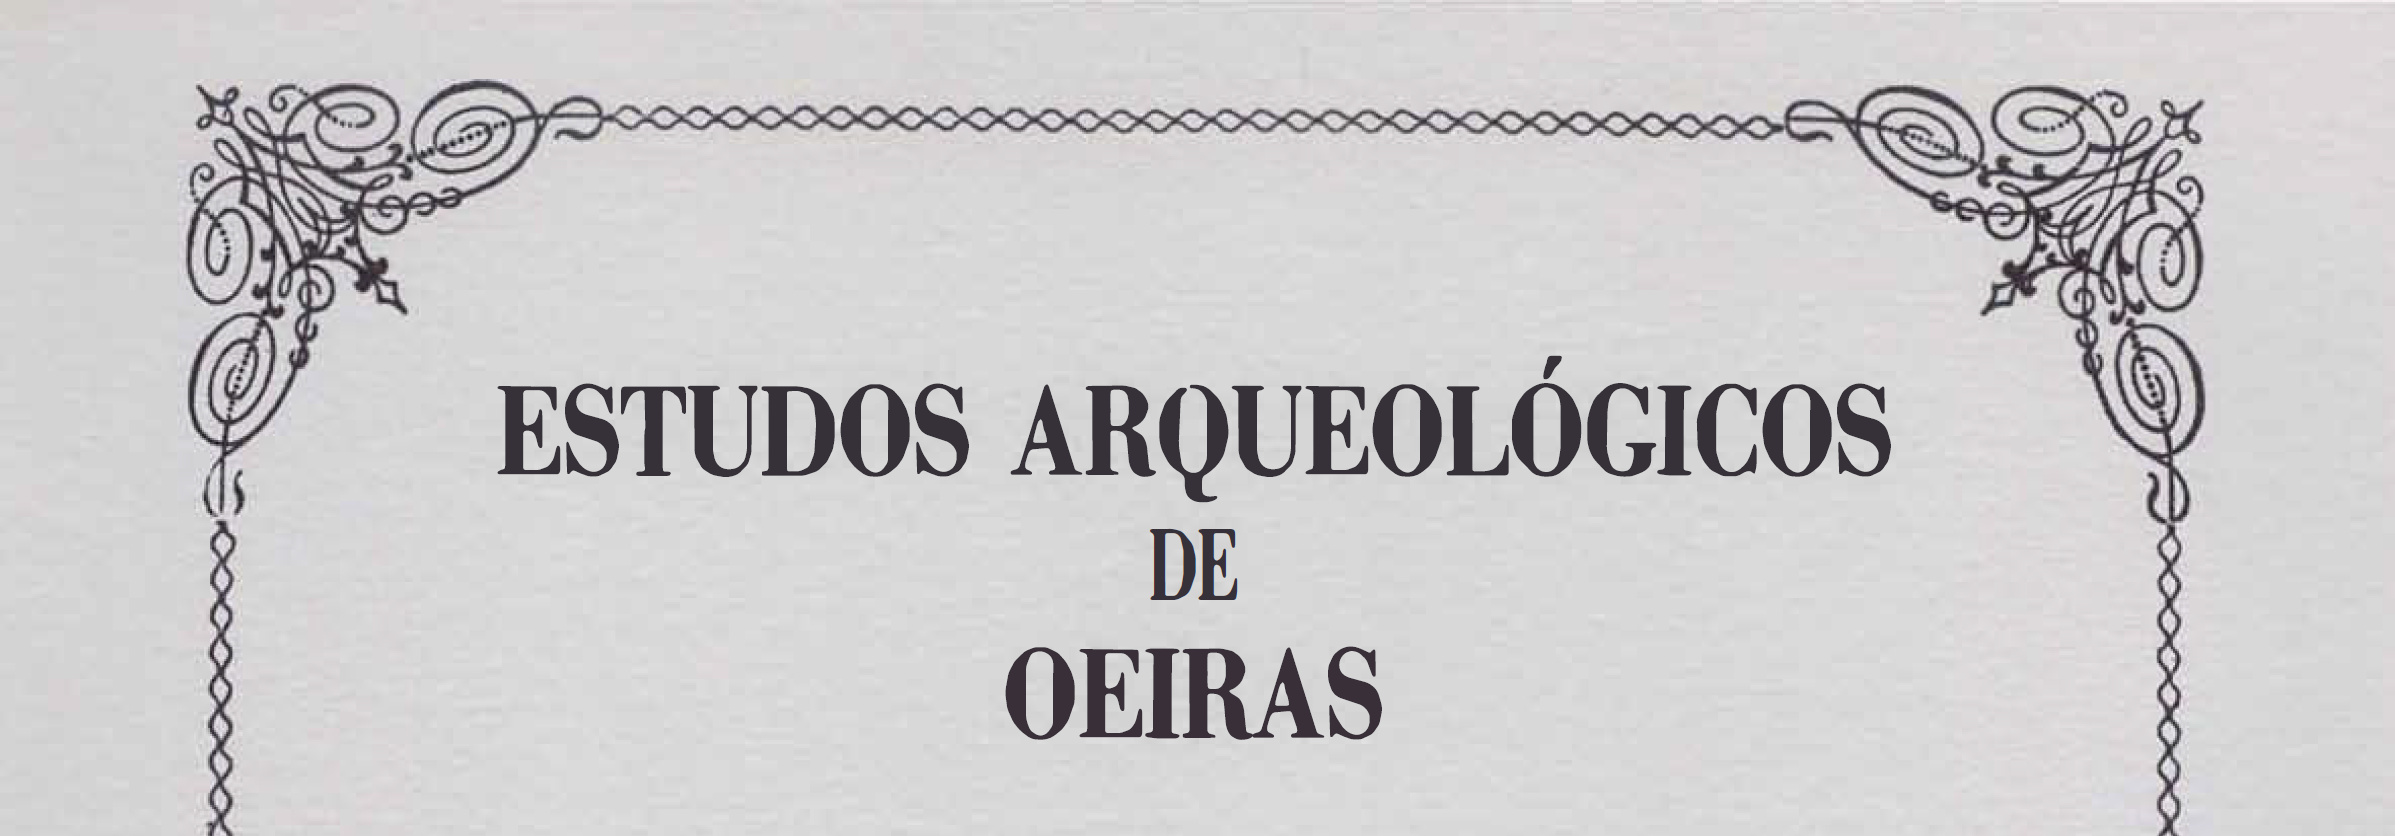 Estudos Arqueológicos de Oeiras, 4